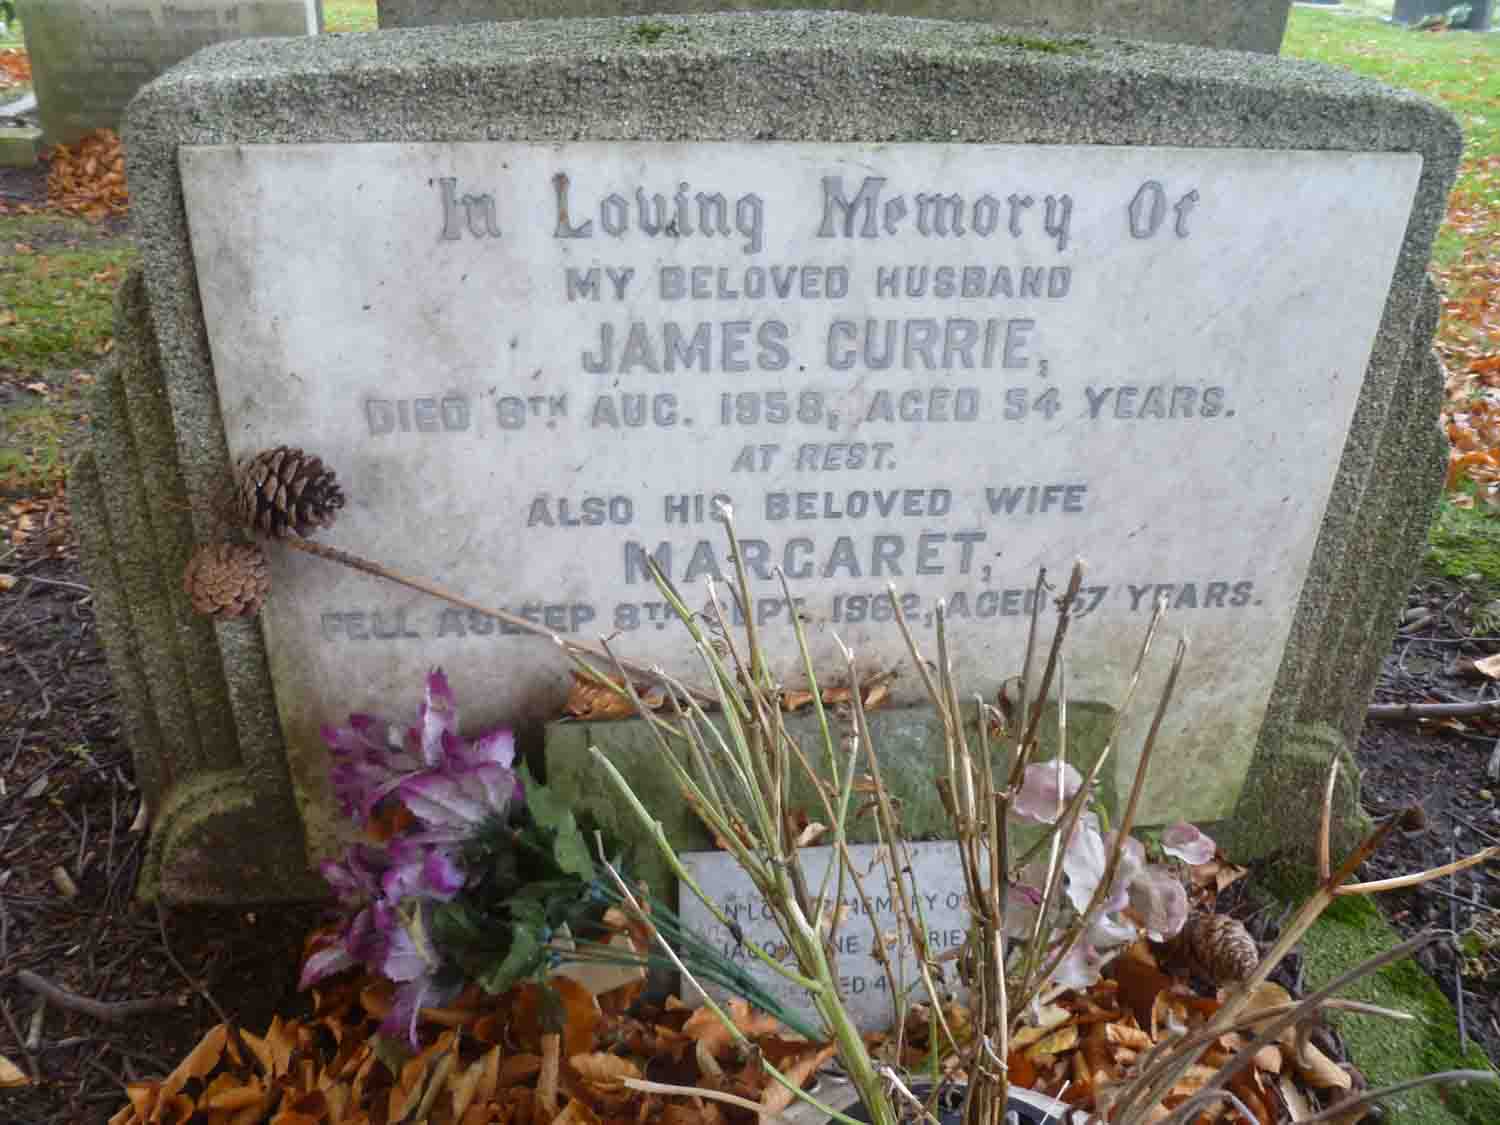 Currie, James & Margaret (A Left 194) (2)